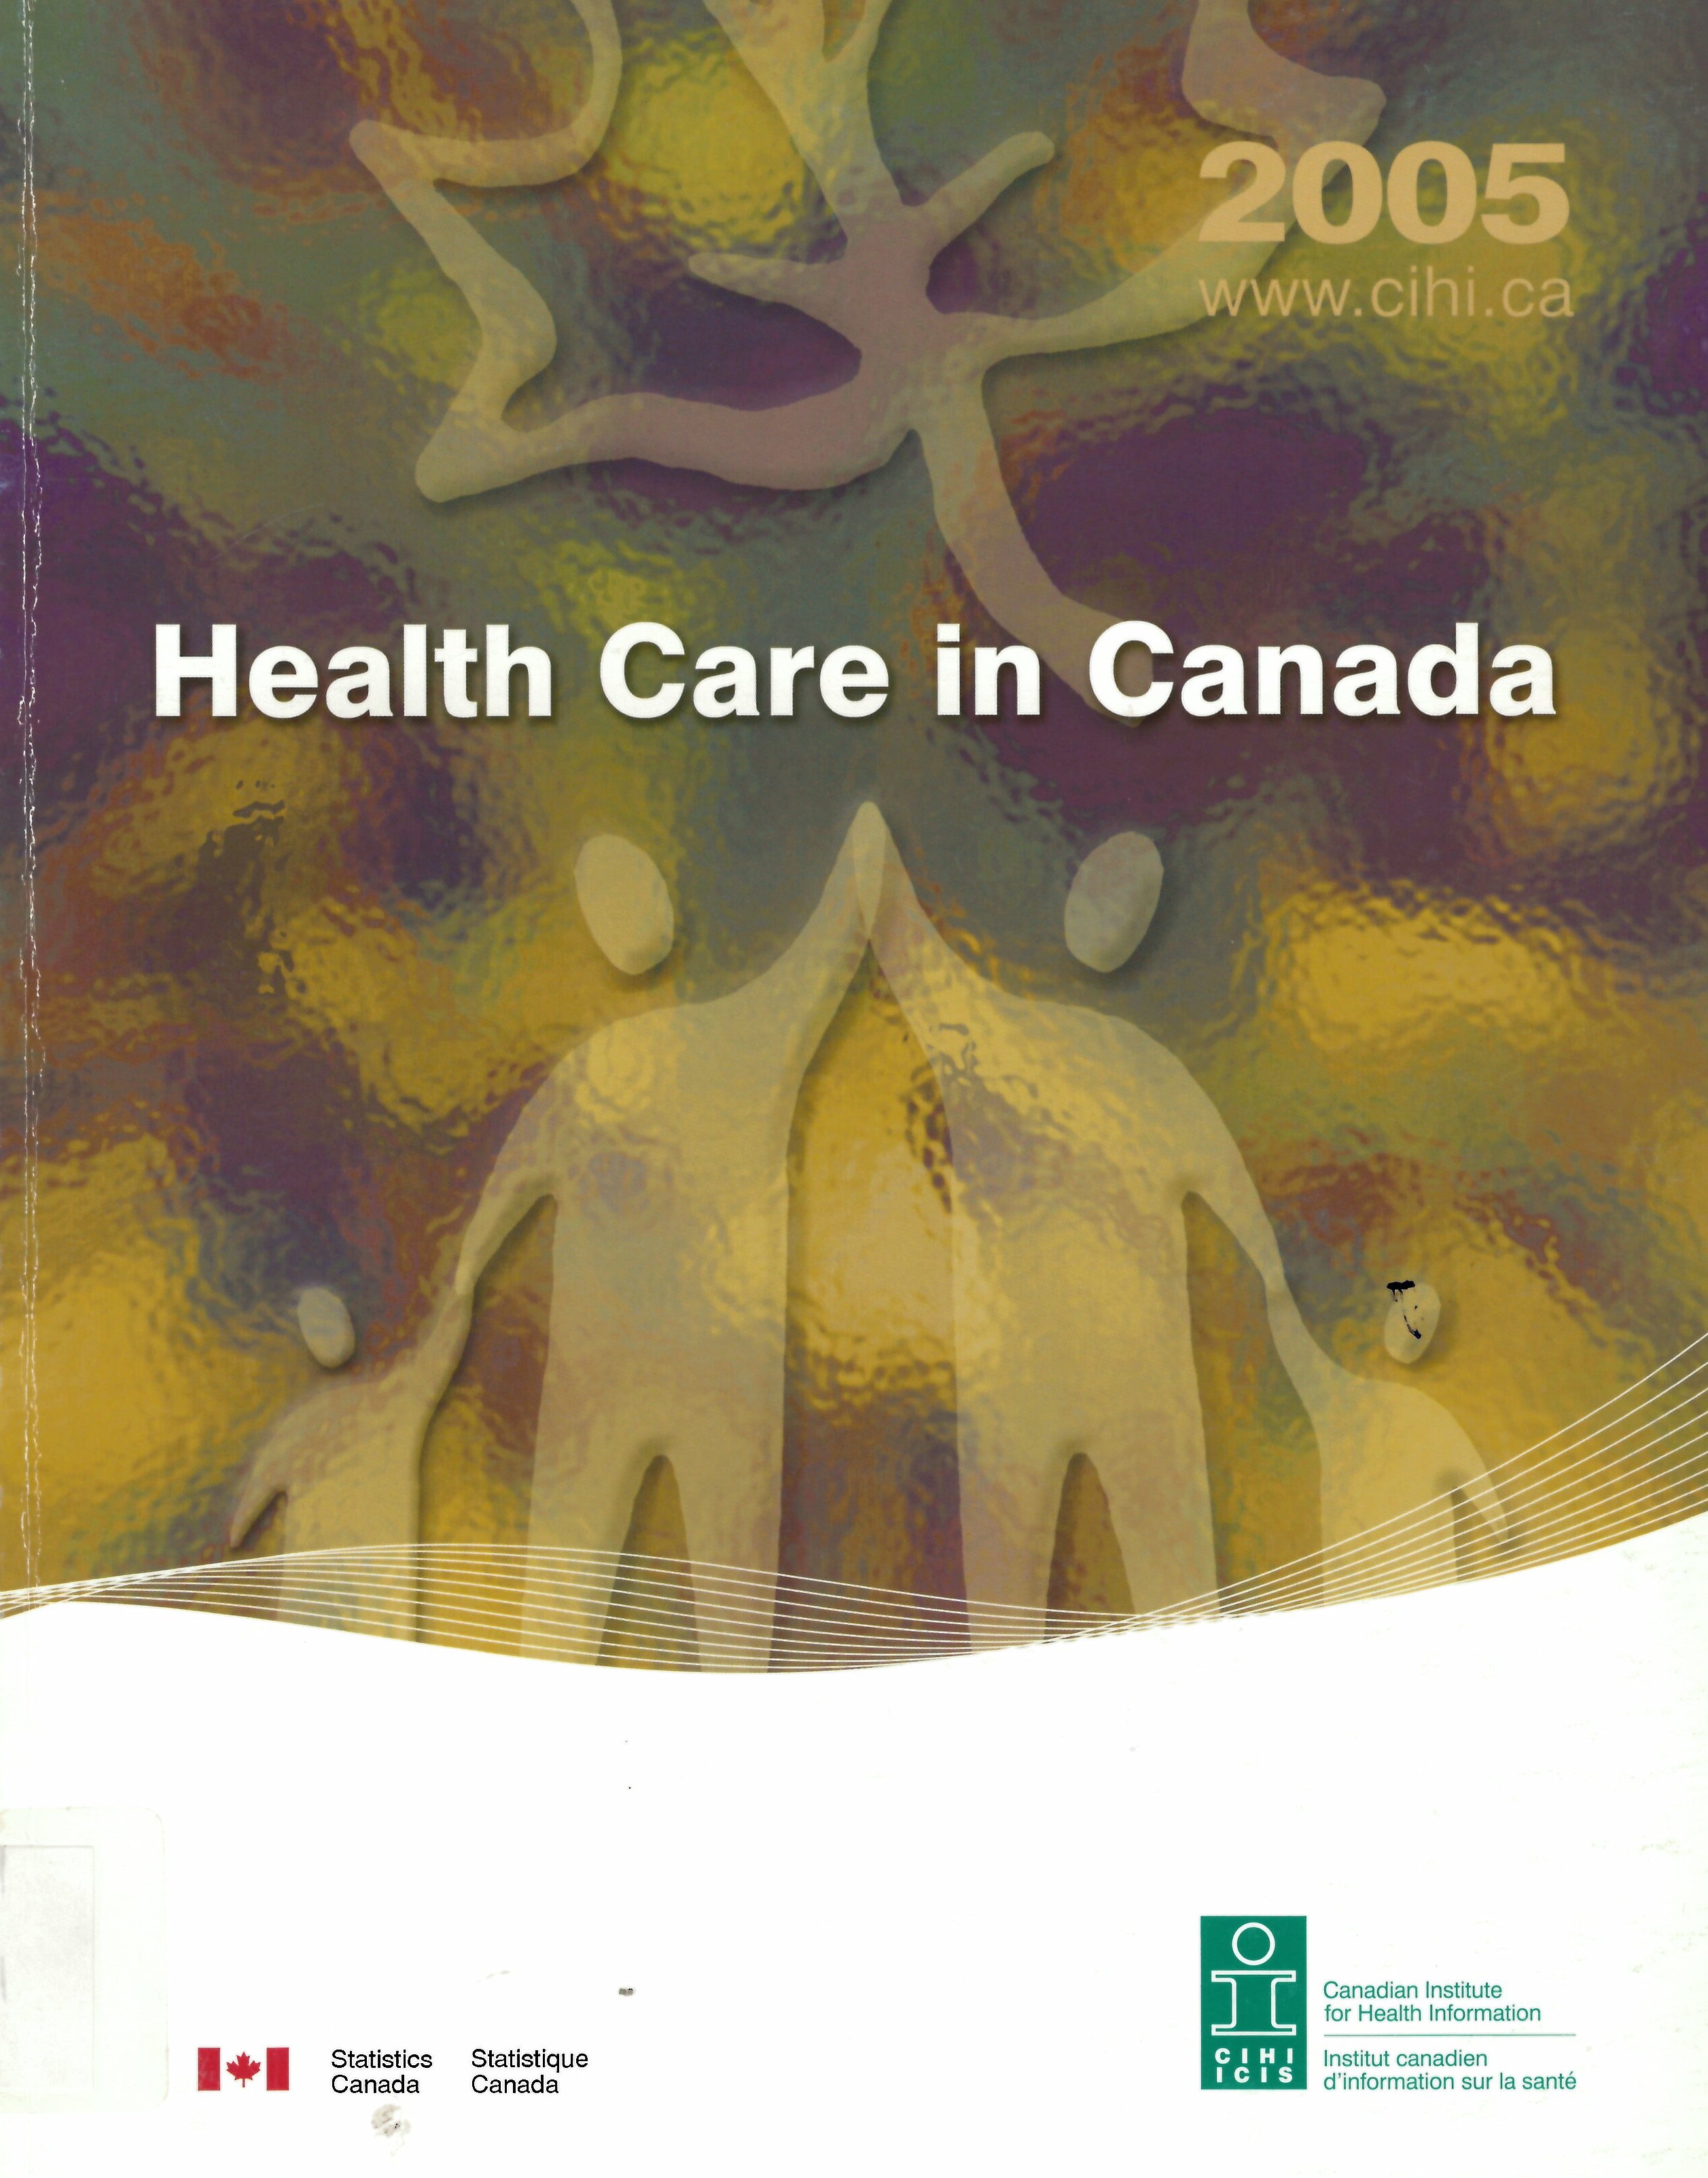 Health care in Canada